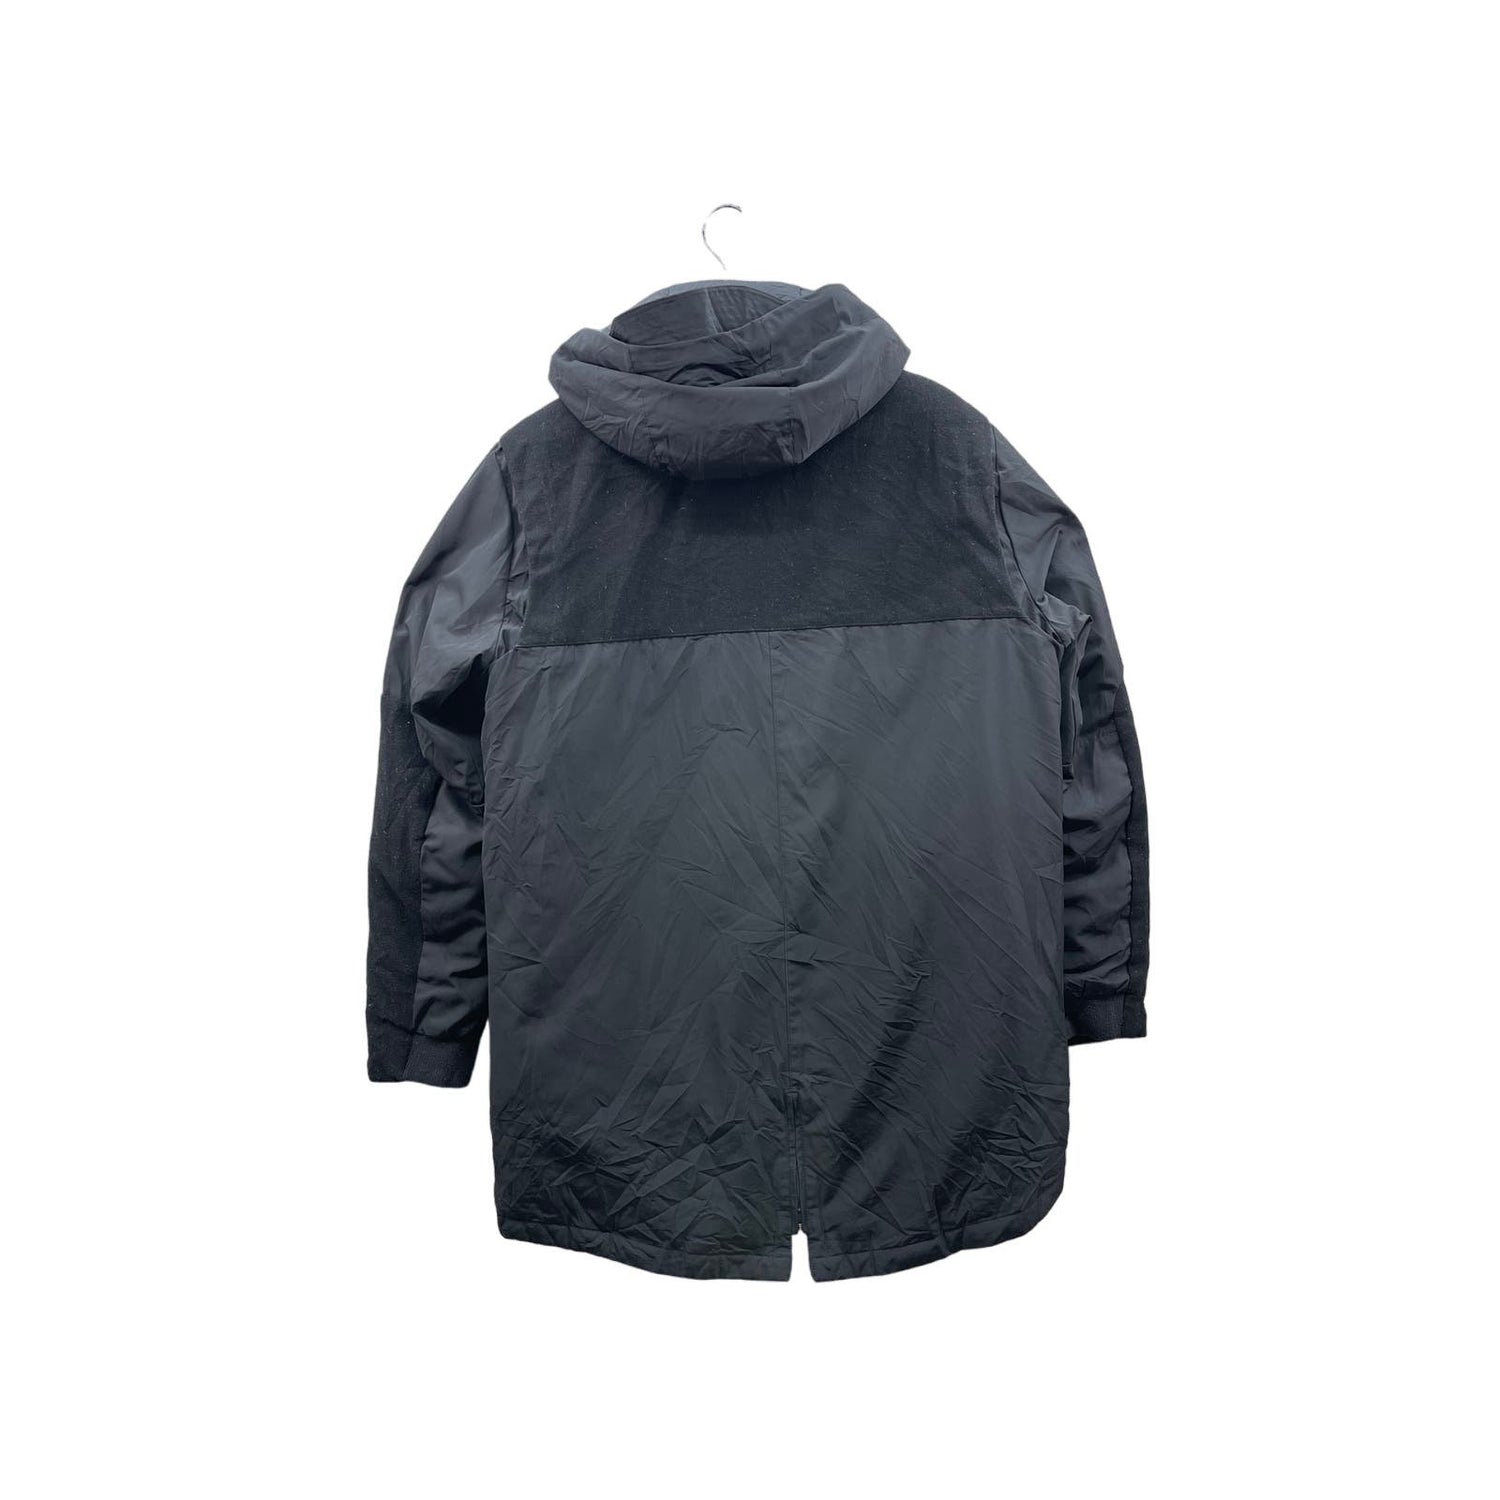 Nike Men's Black/Grey Tech Fleece Fishtail Parka Jacket